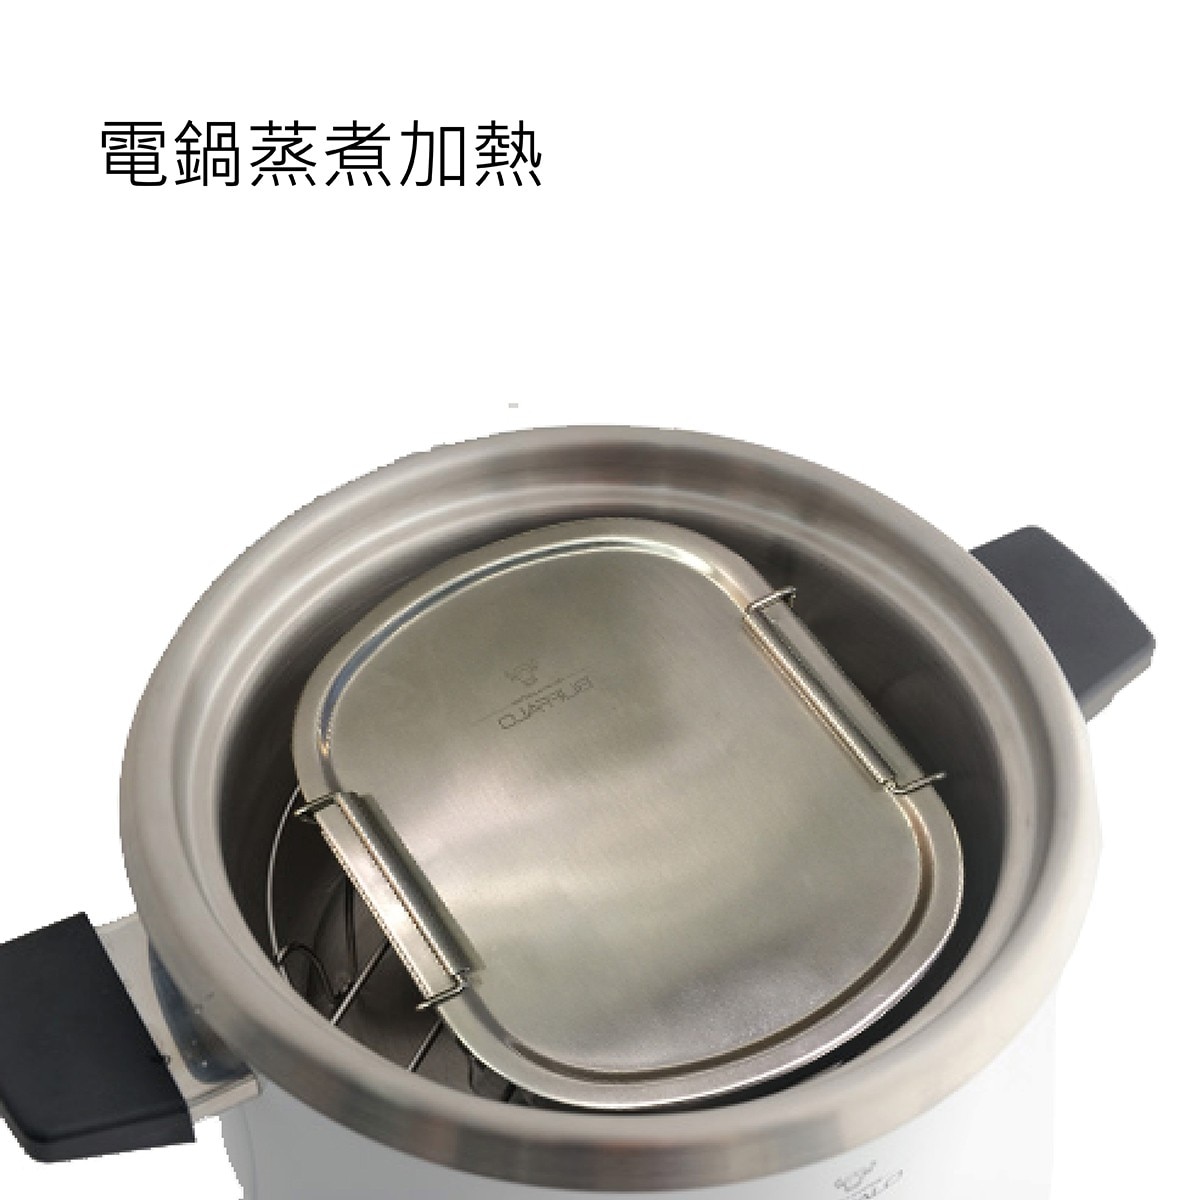 BUFFALO,不鏽鋼便當盒2件組容,量:900毫升/件,可電鍋蒸煮加熱.